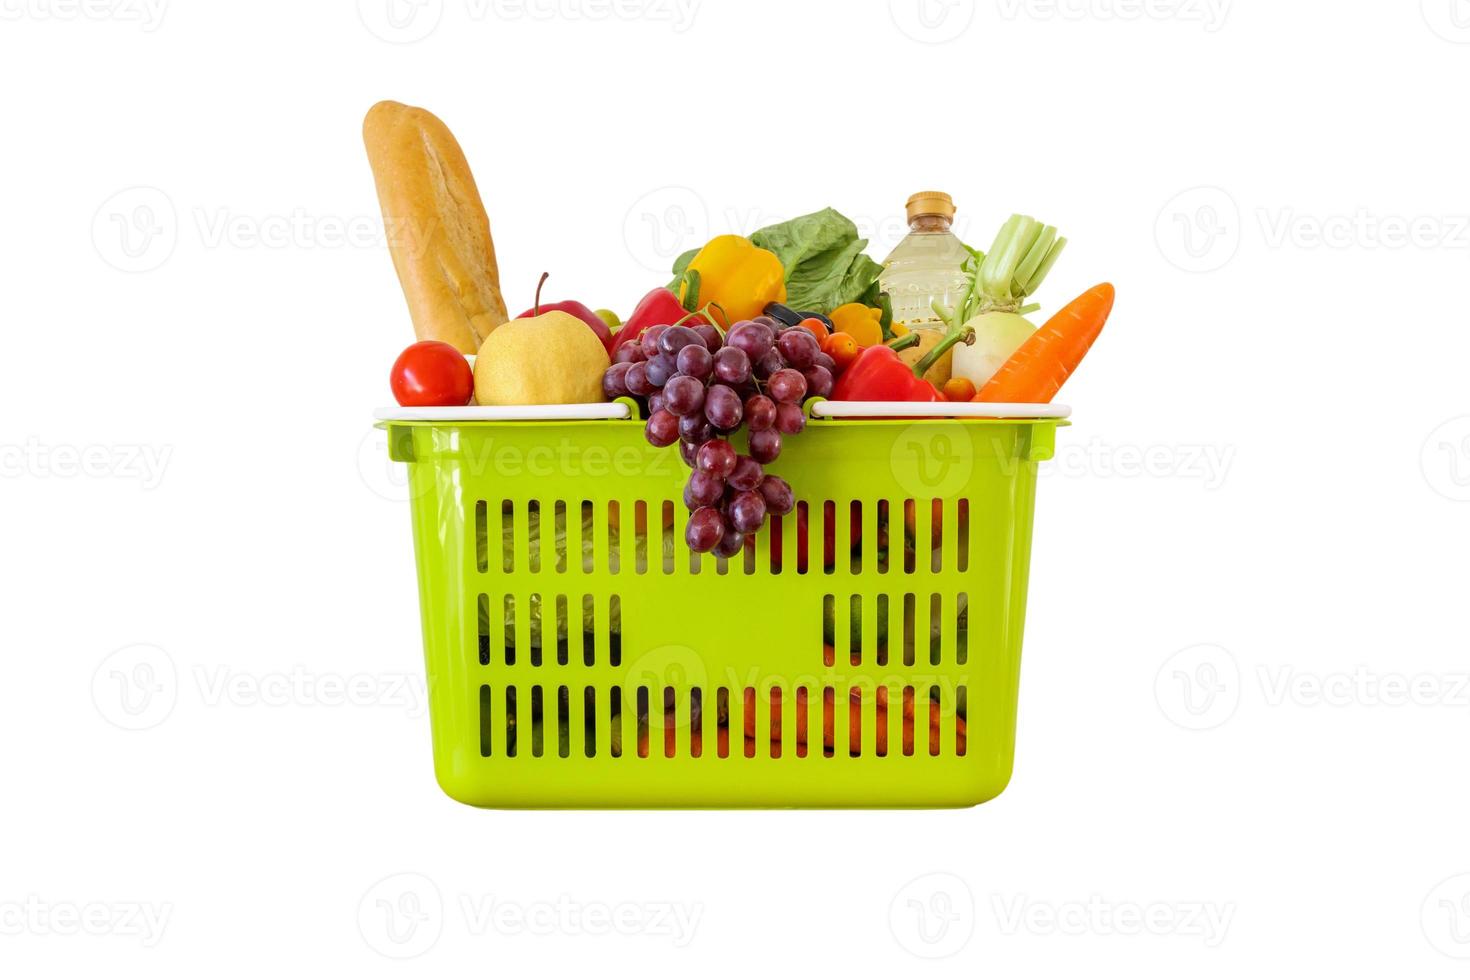 verse groenten en fruit kruidenier product in groene winkelmandje geïsoleerd op een witte achtergrond foto